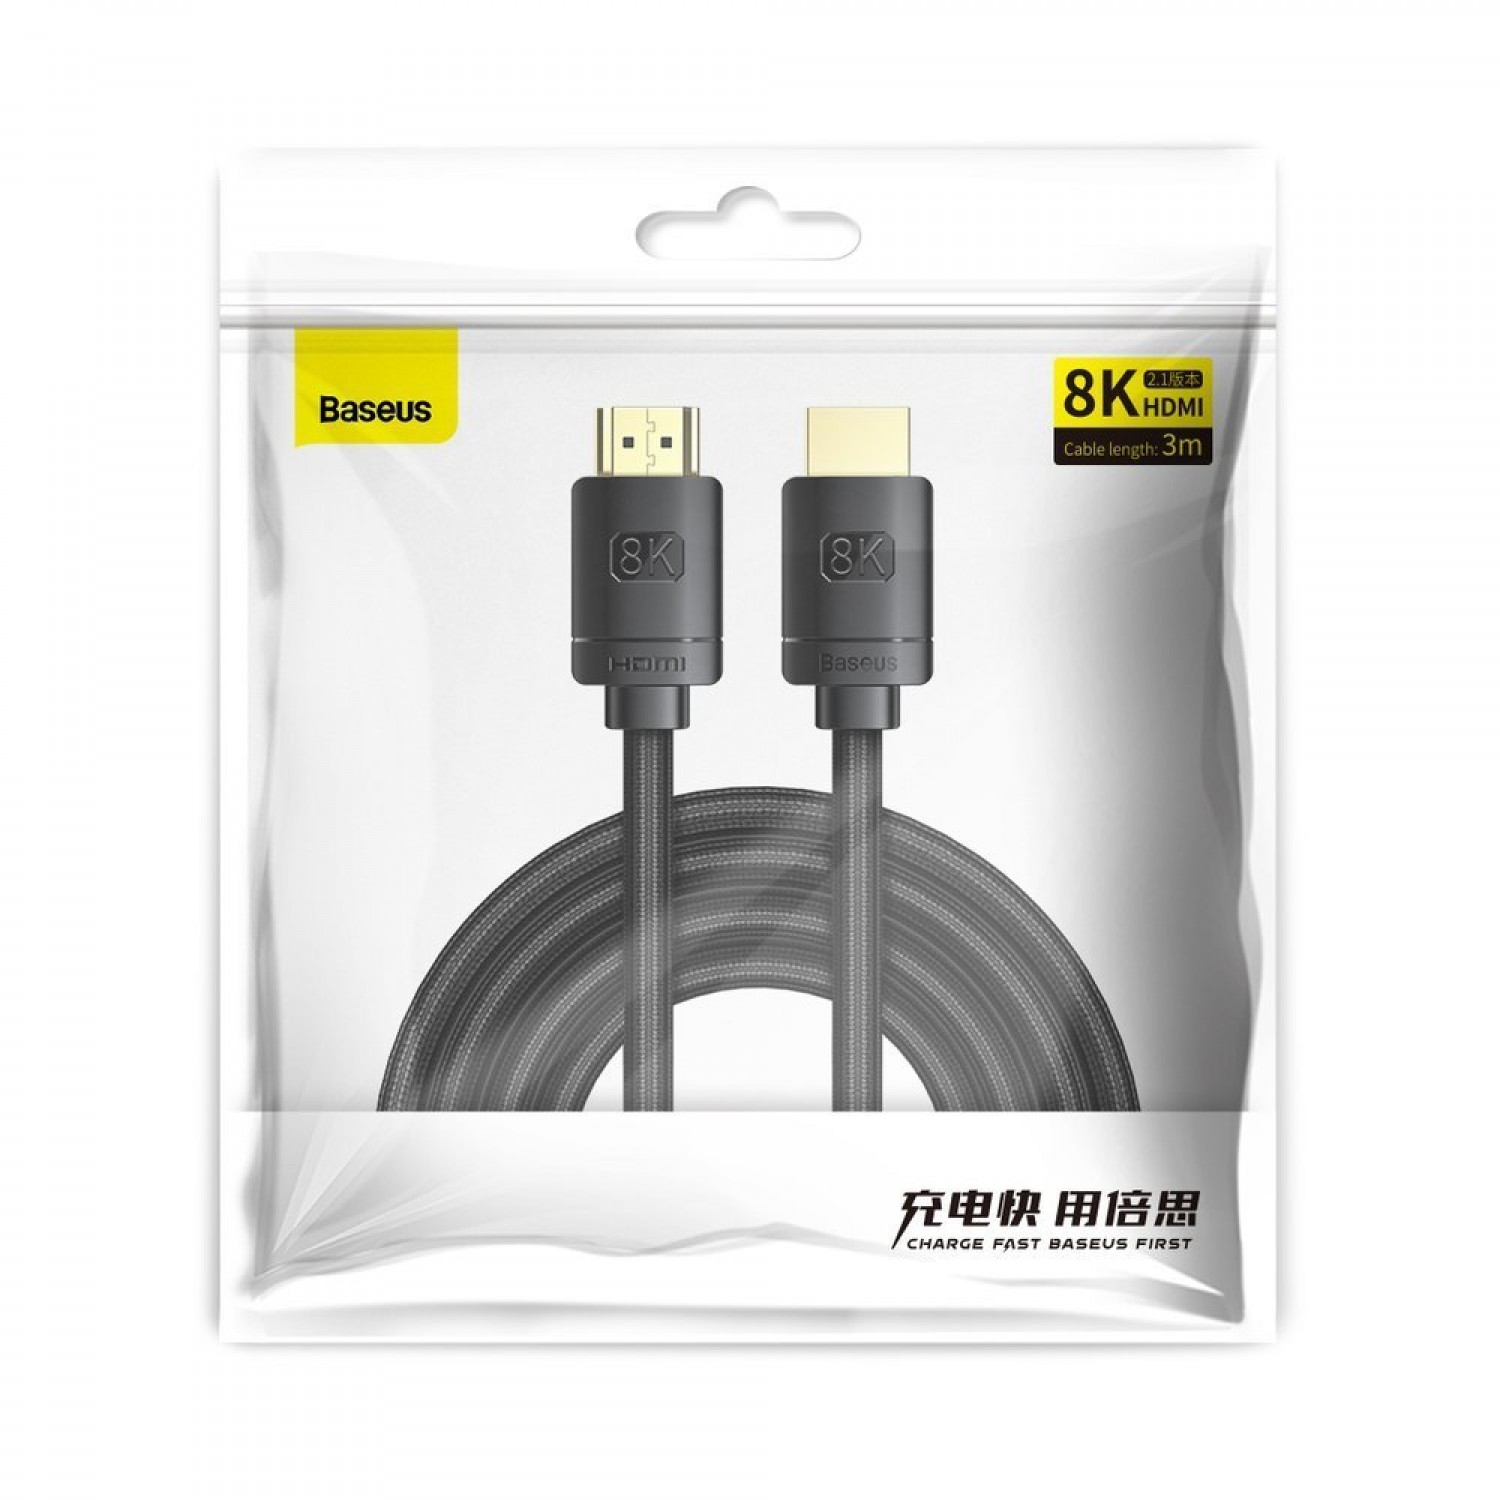 کابل HDMI (اچ دی ام آی) Baseus CAKGQ- E01 - 8M-1